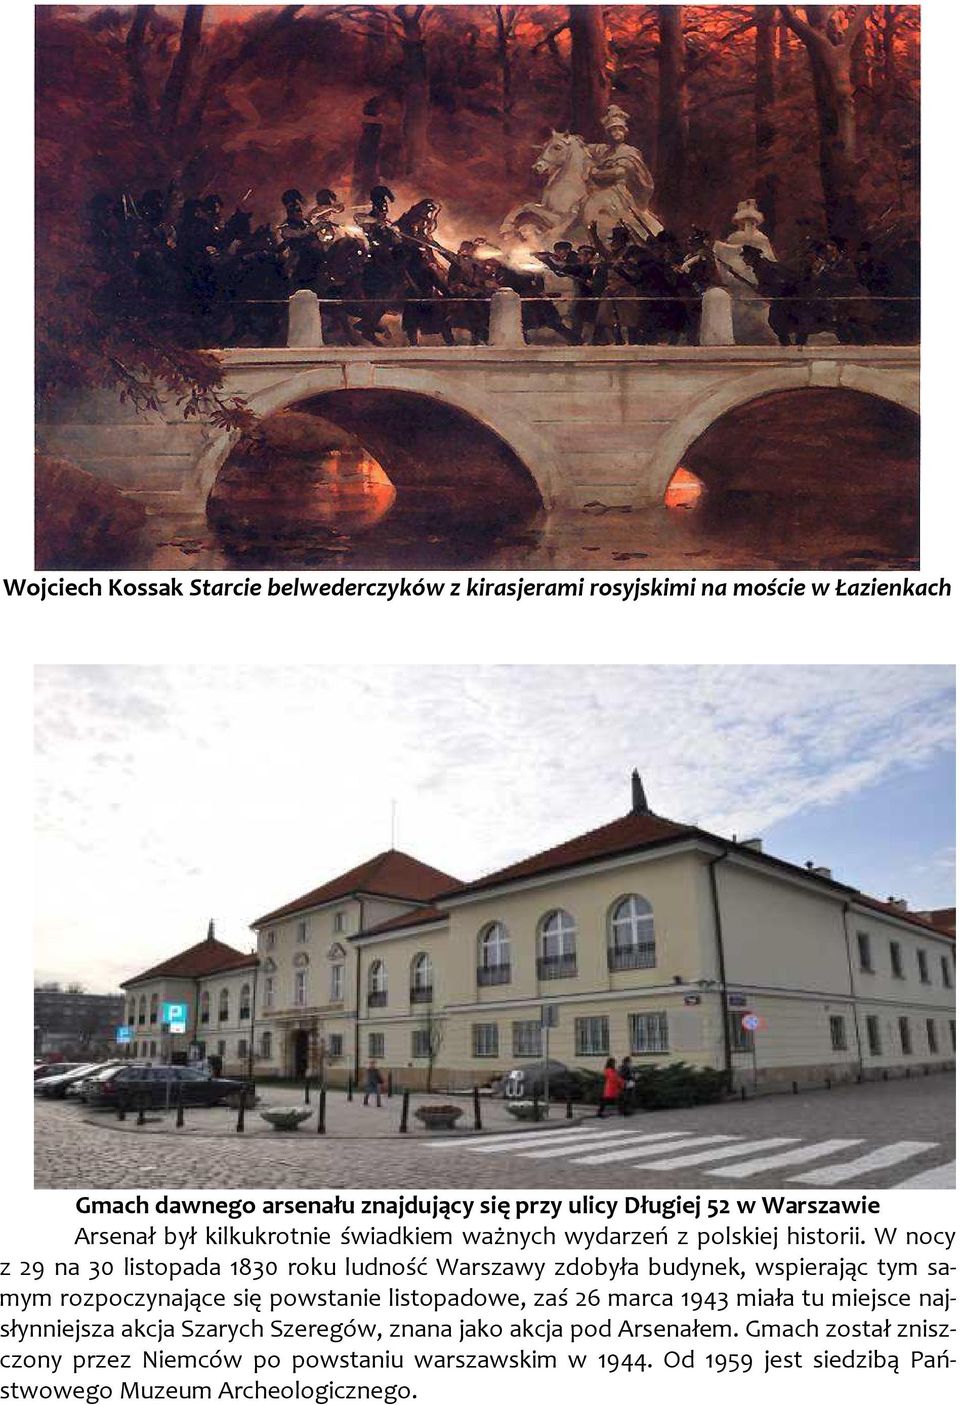 W nocy z 29 na 30 listopada 1830 roku ludność Warszawy zdobyła budynek, wspierając tym samym rozpoczynające się powstanie listopadowe, zaś 26 marca